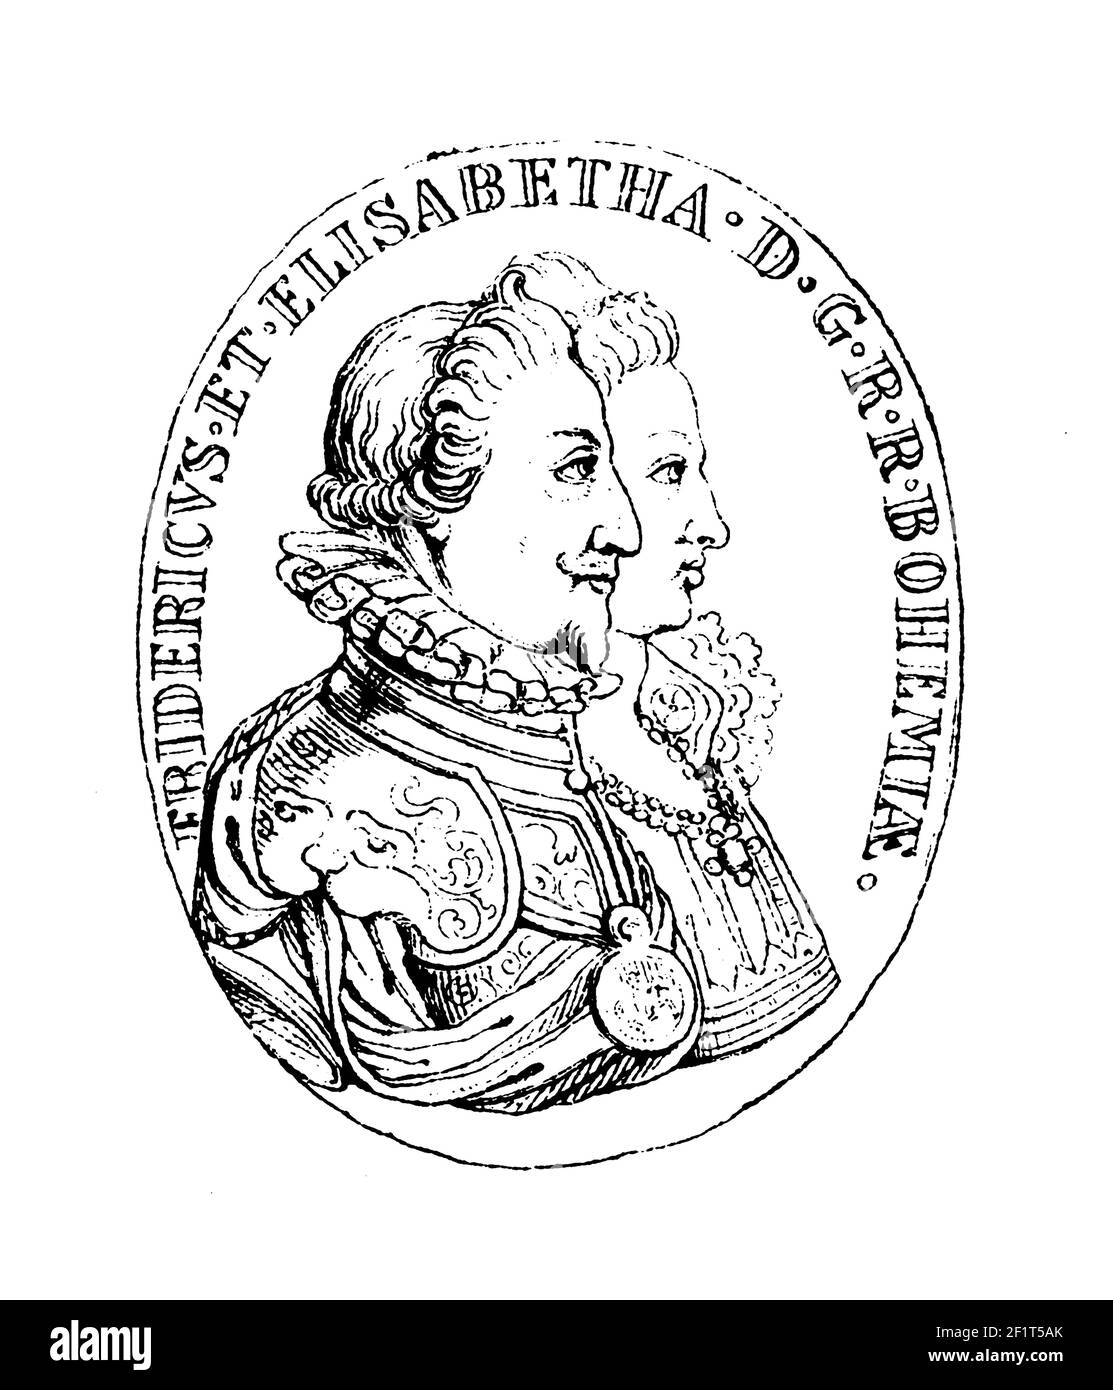 Illustration antique d'un portrait de Frederick V et de sa femme Elizabeth. Frédéric était électeur Palatin et roi de Bohême. Gravure publiée en B Banque D'Images